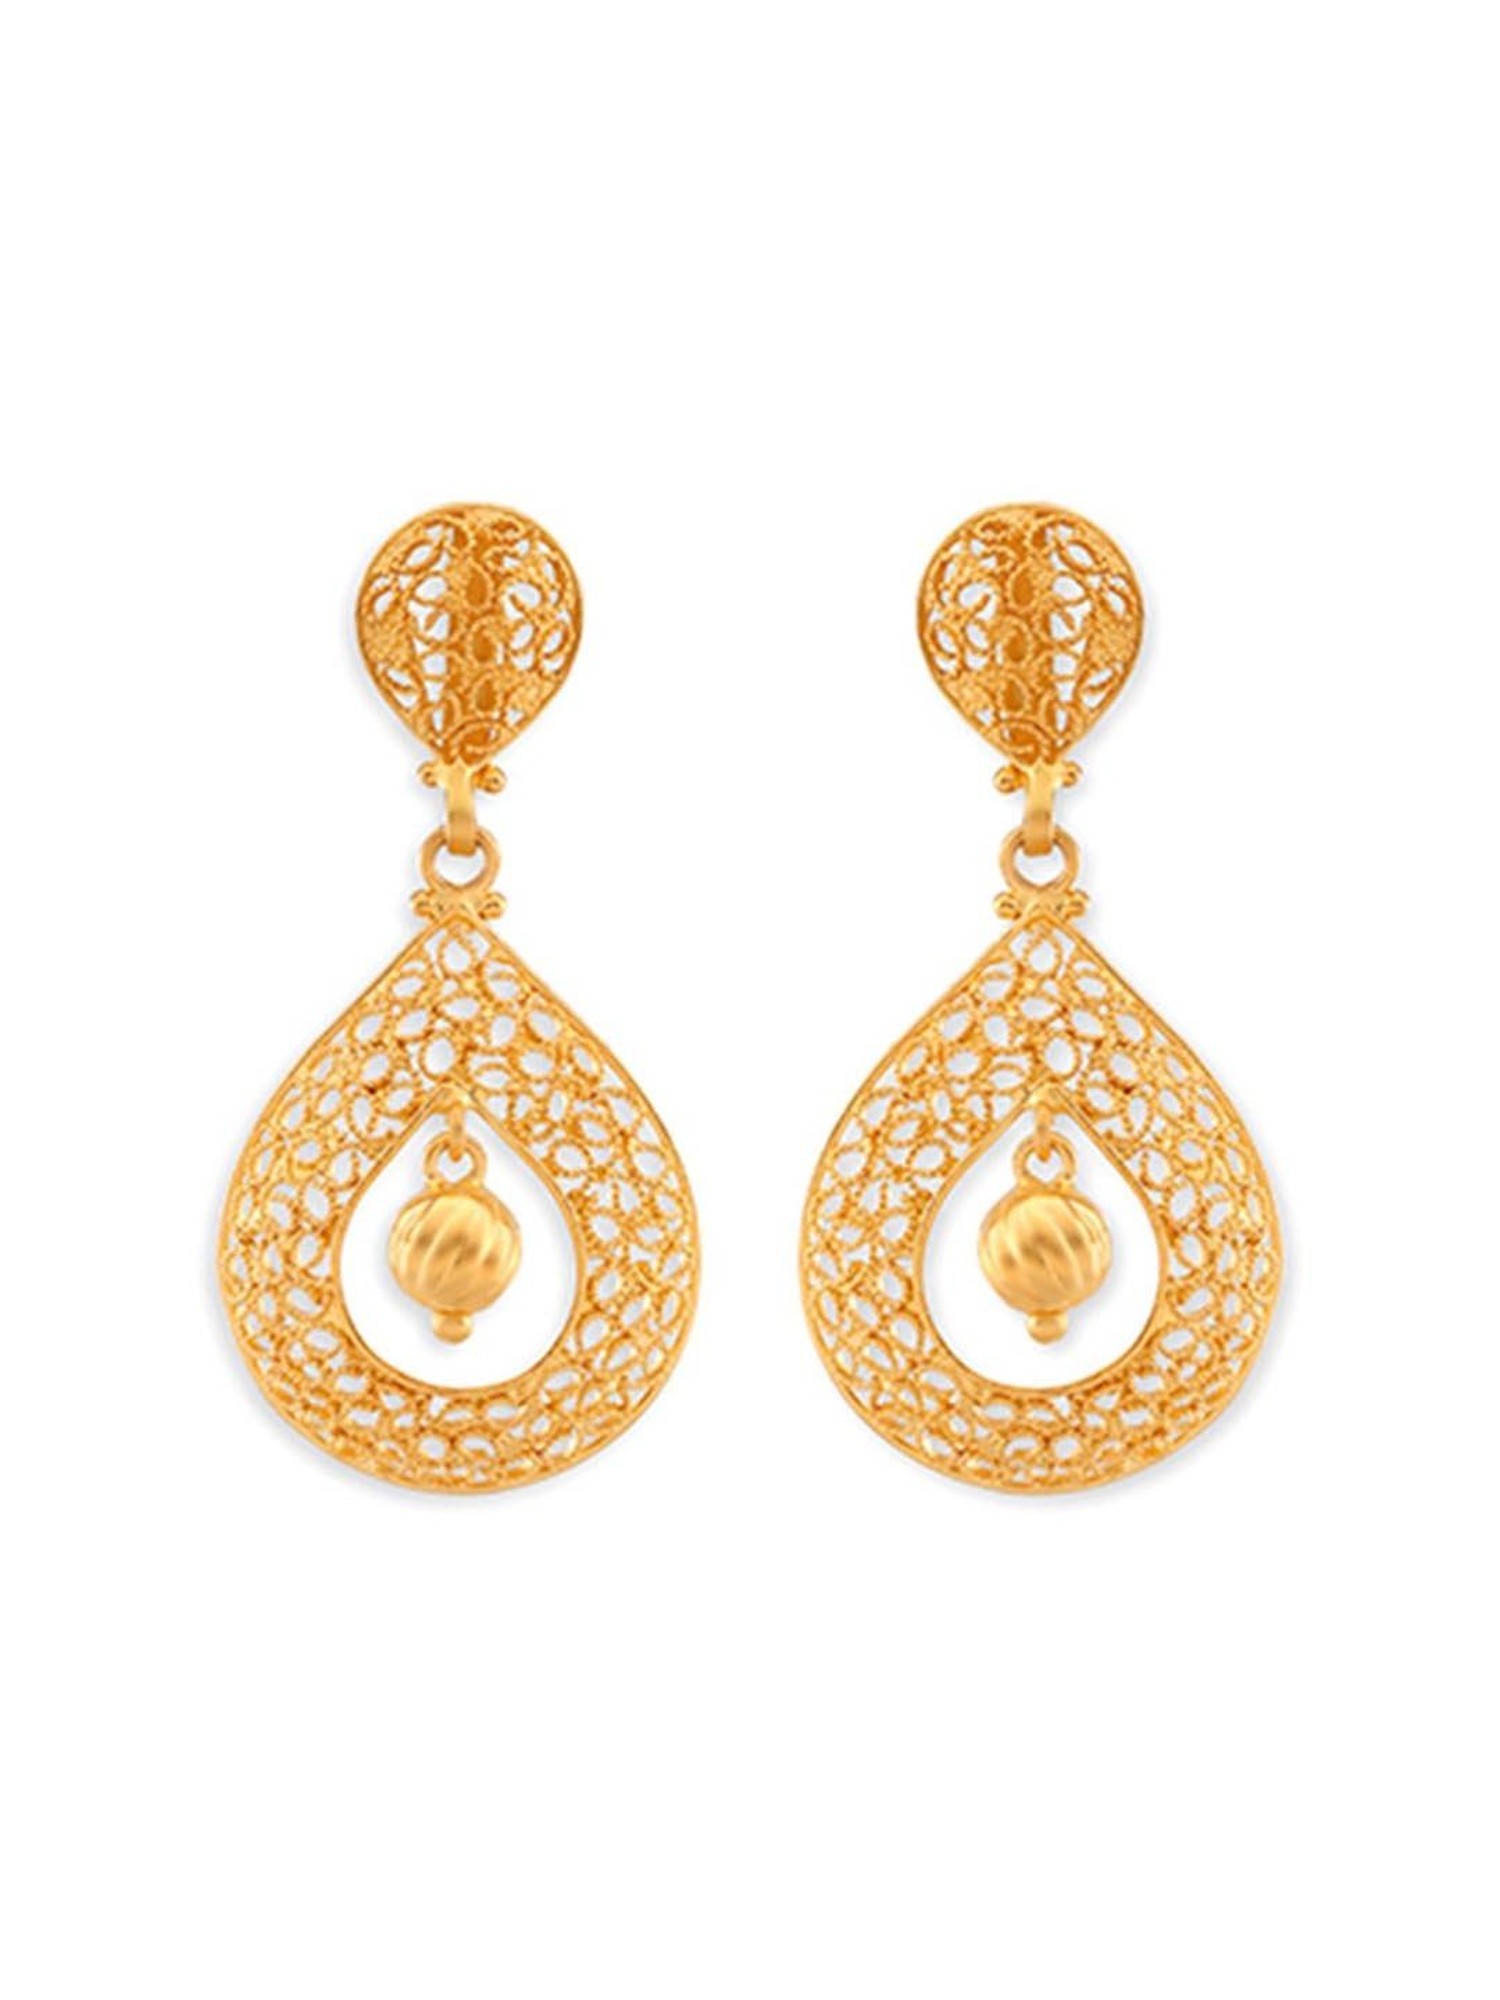 Tanishq 22k Gold Earrings-Tanishq-FineJewellery-TATA CLIQ